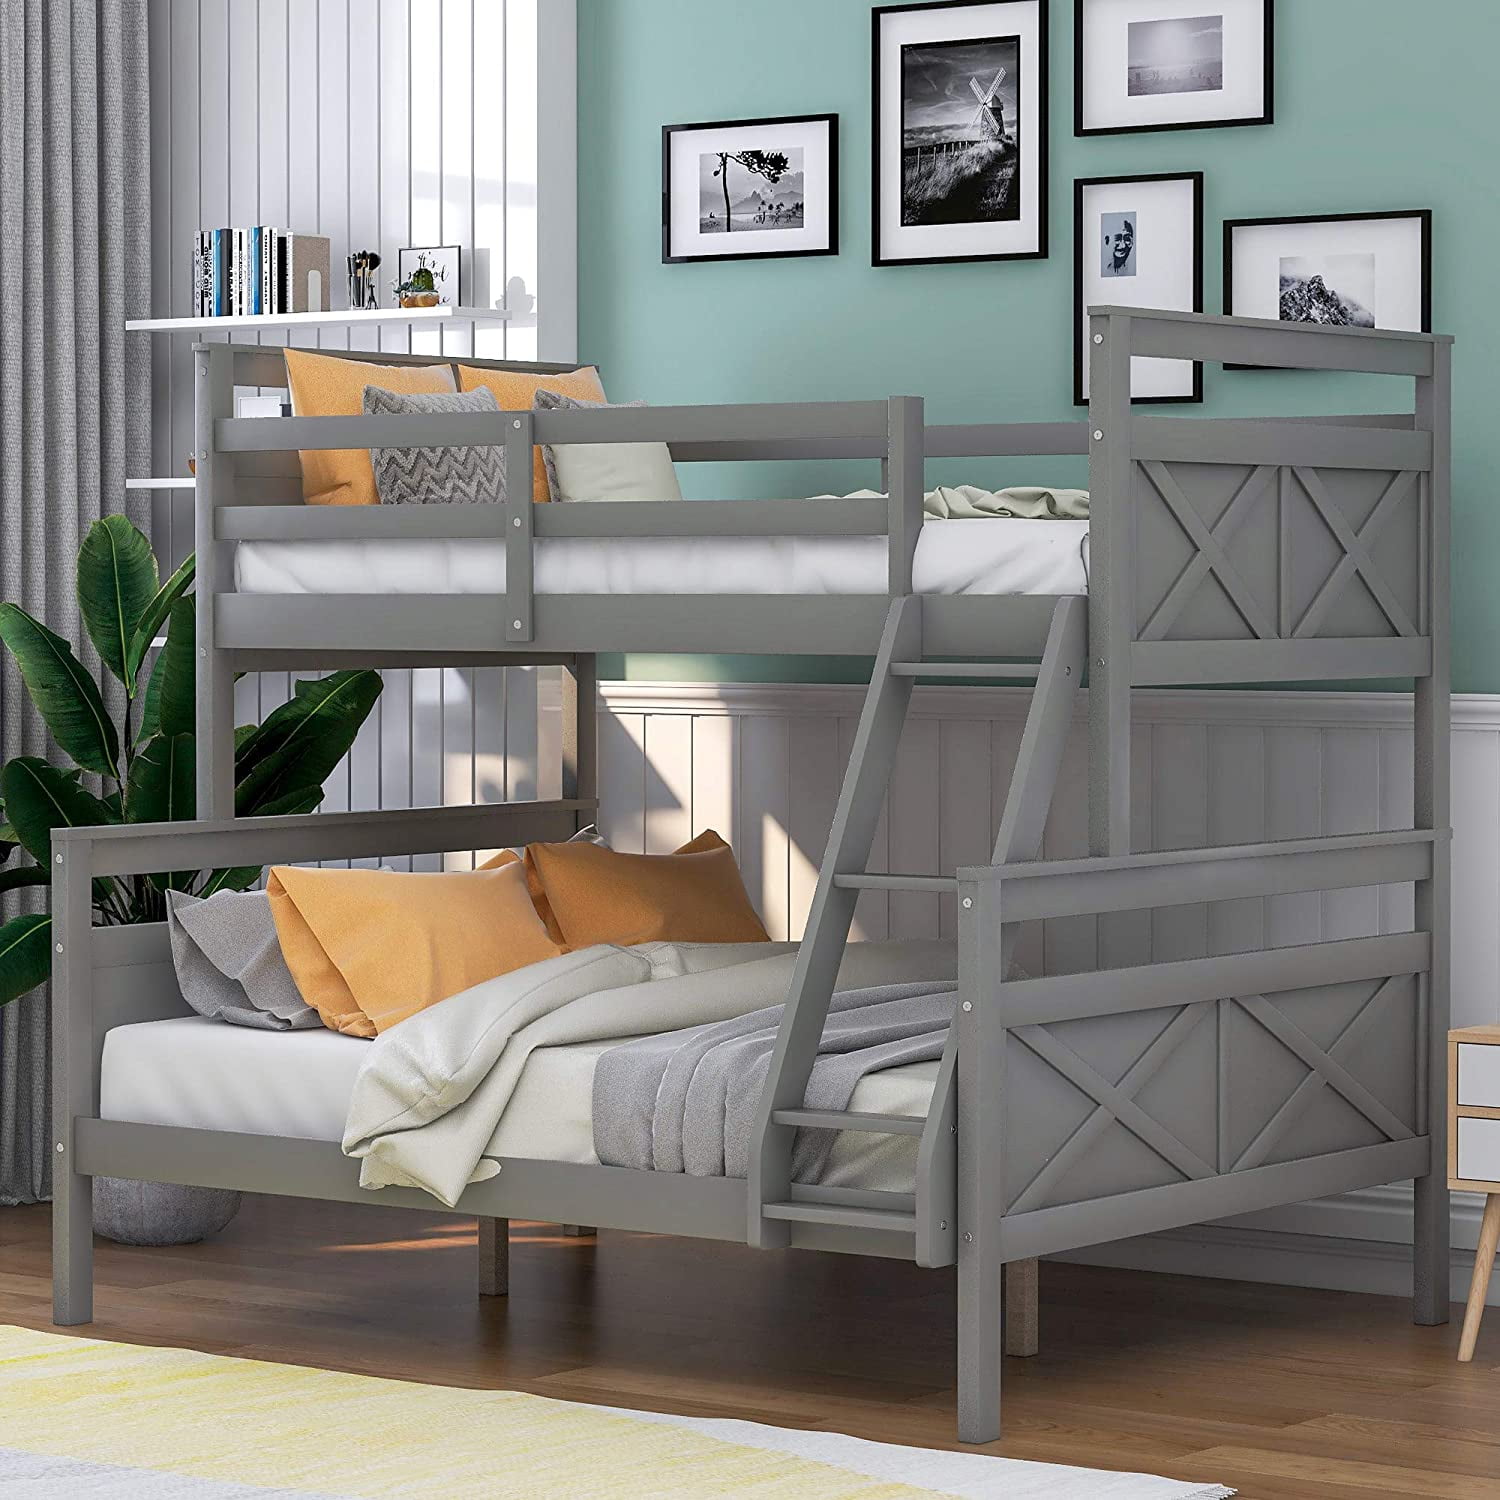 Bunk Bed Bedroom Wood Ladder Kids Dorm Furniture Frame 